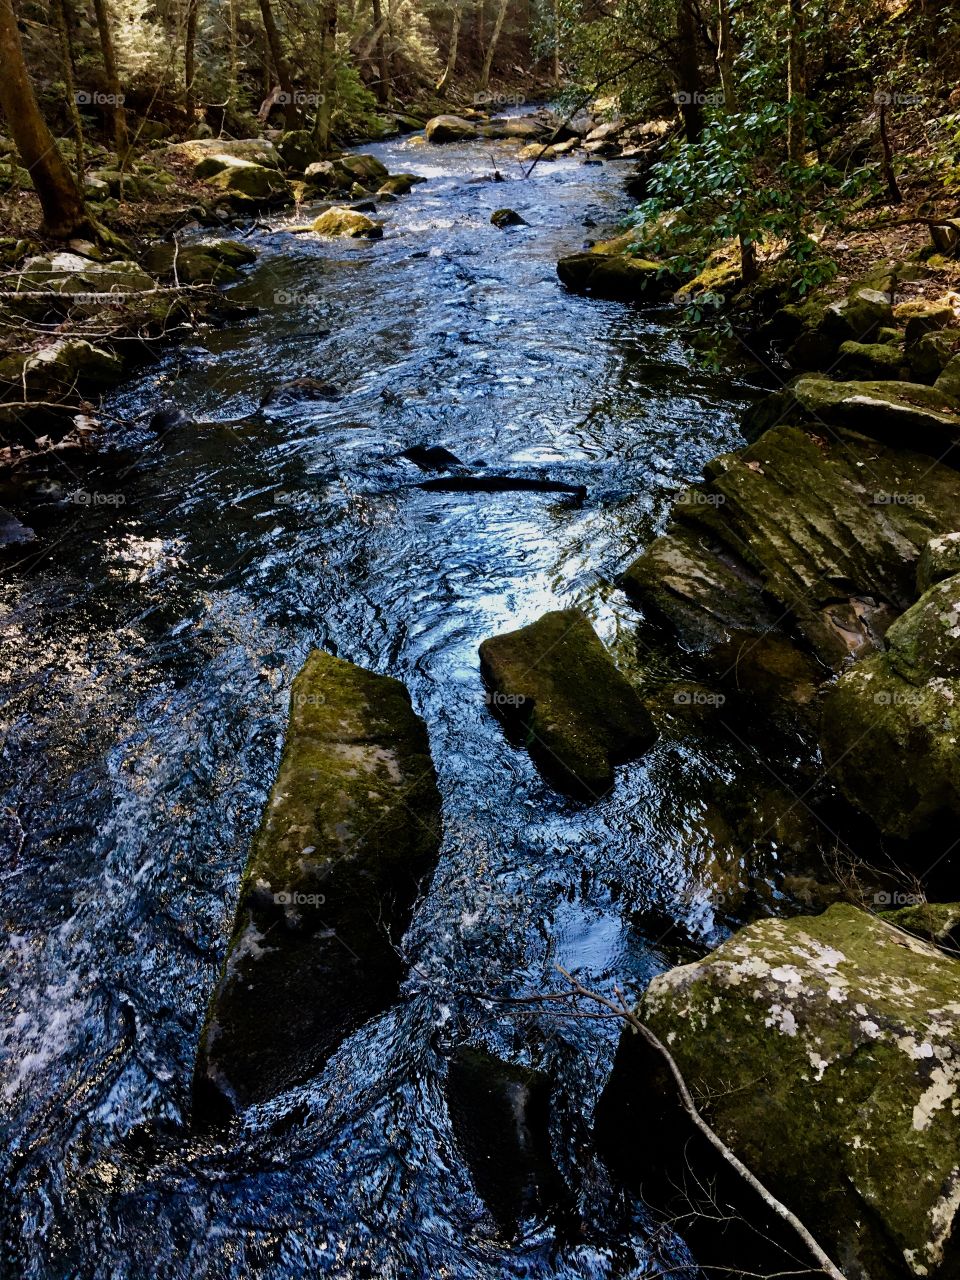 Light simmering across the creek